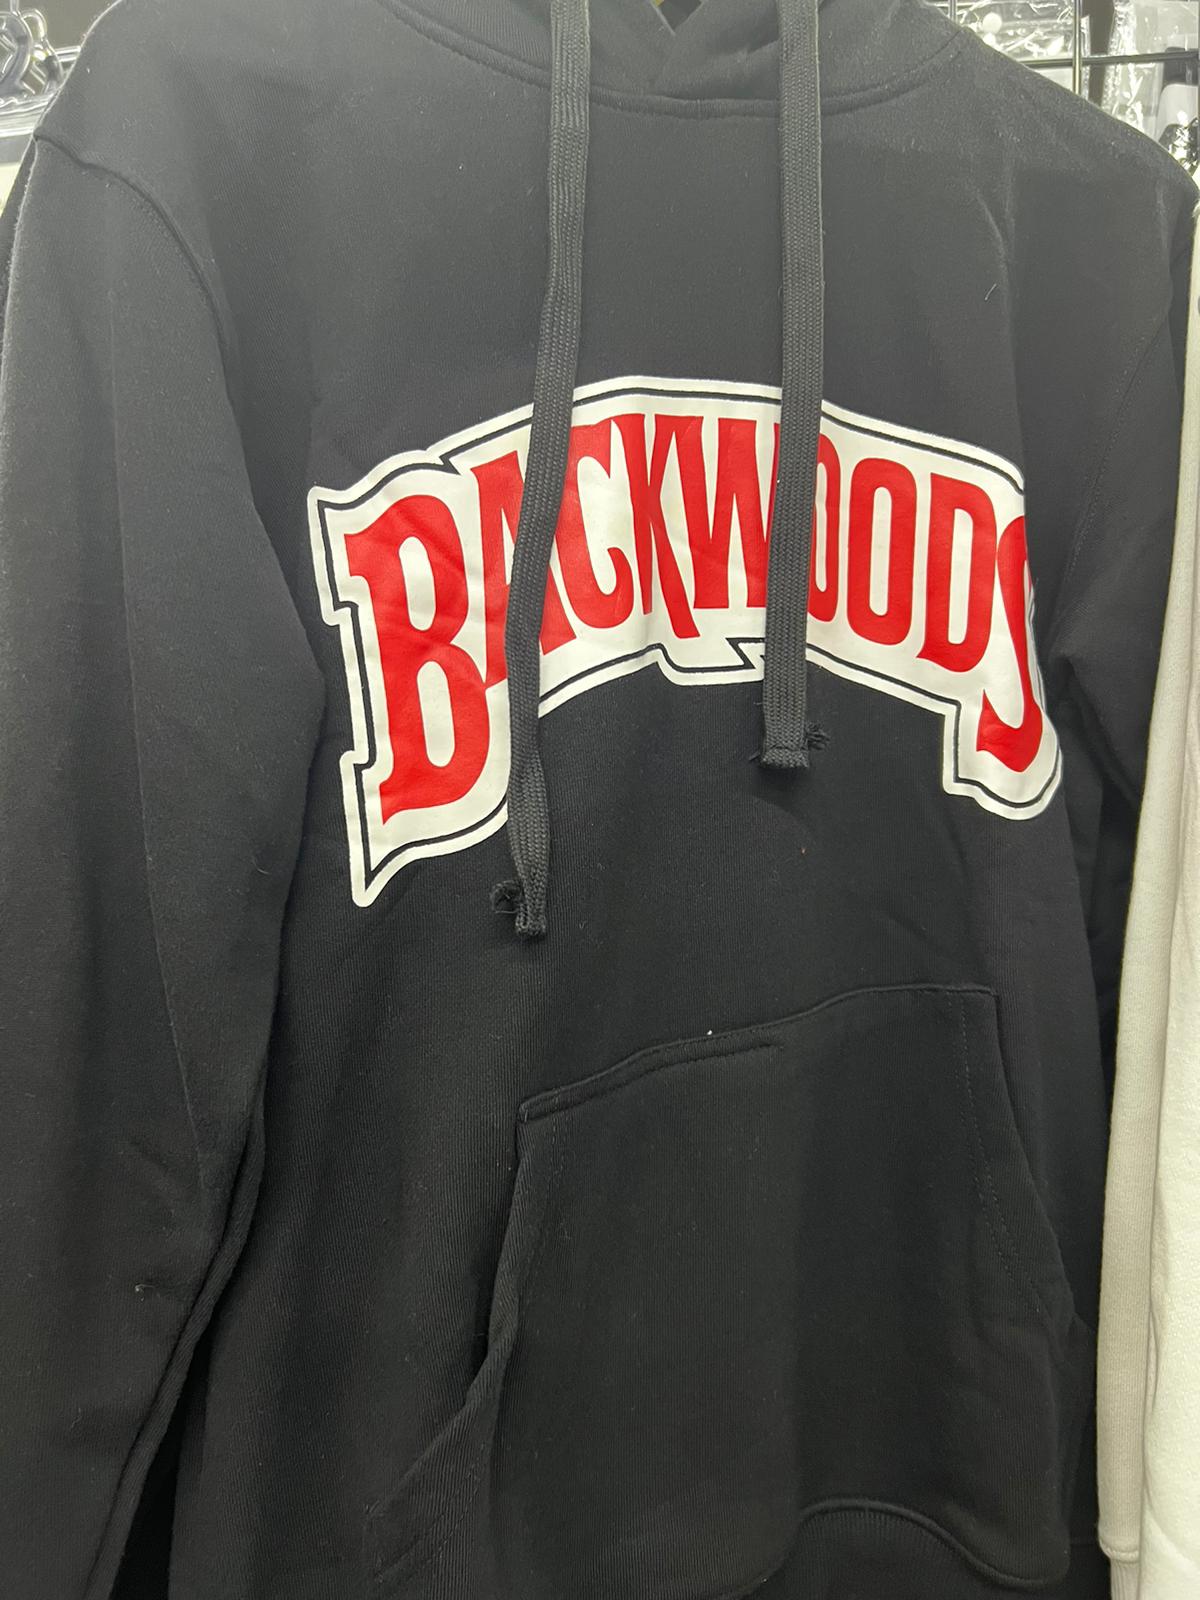 Backwoods Hoodie - Black (5X-Large)